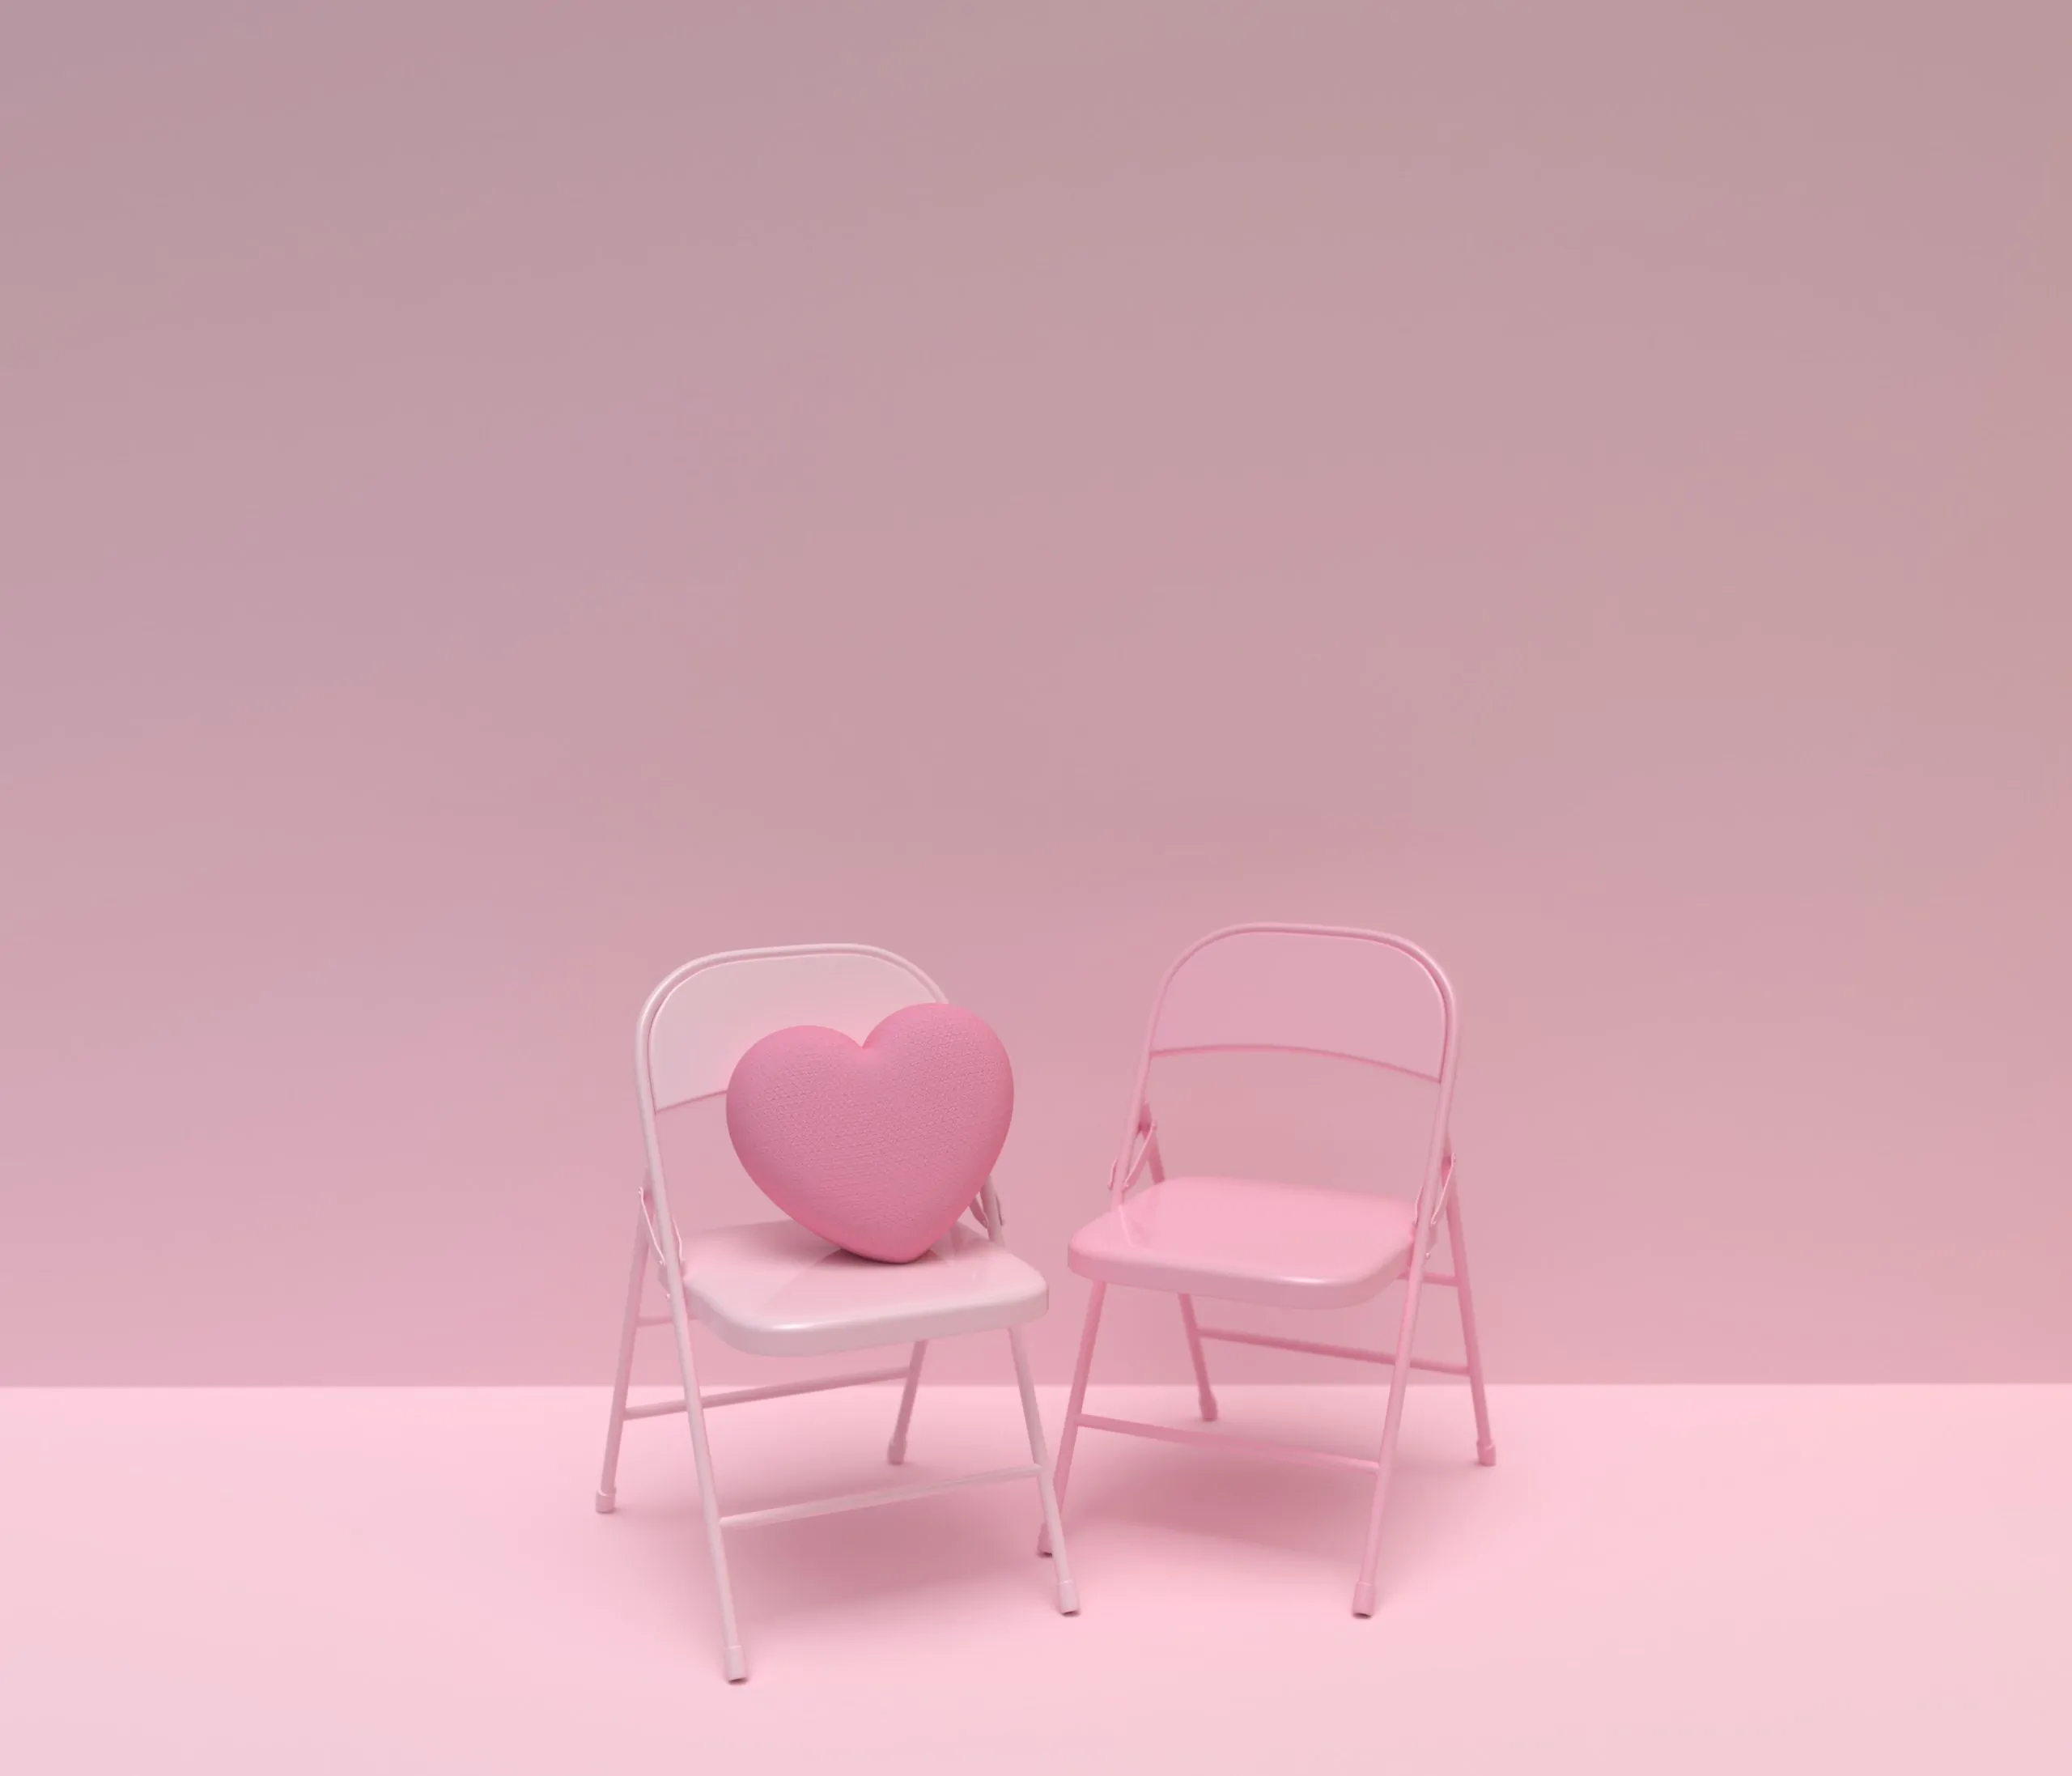 Deux chaises pliantes roses avec un cœur dessus.